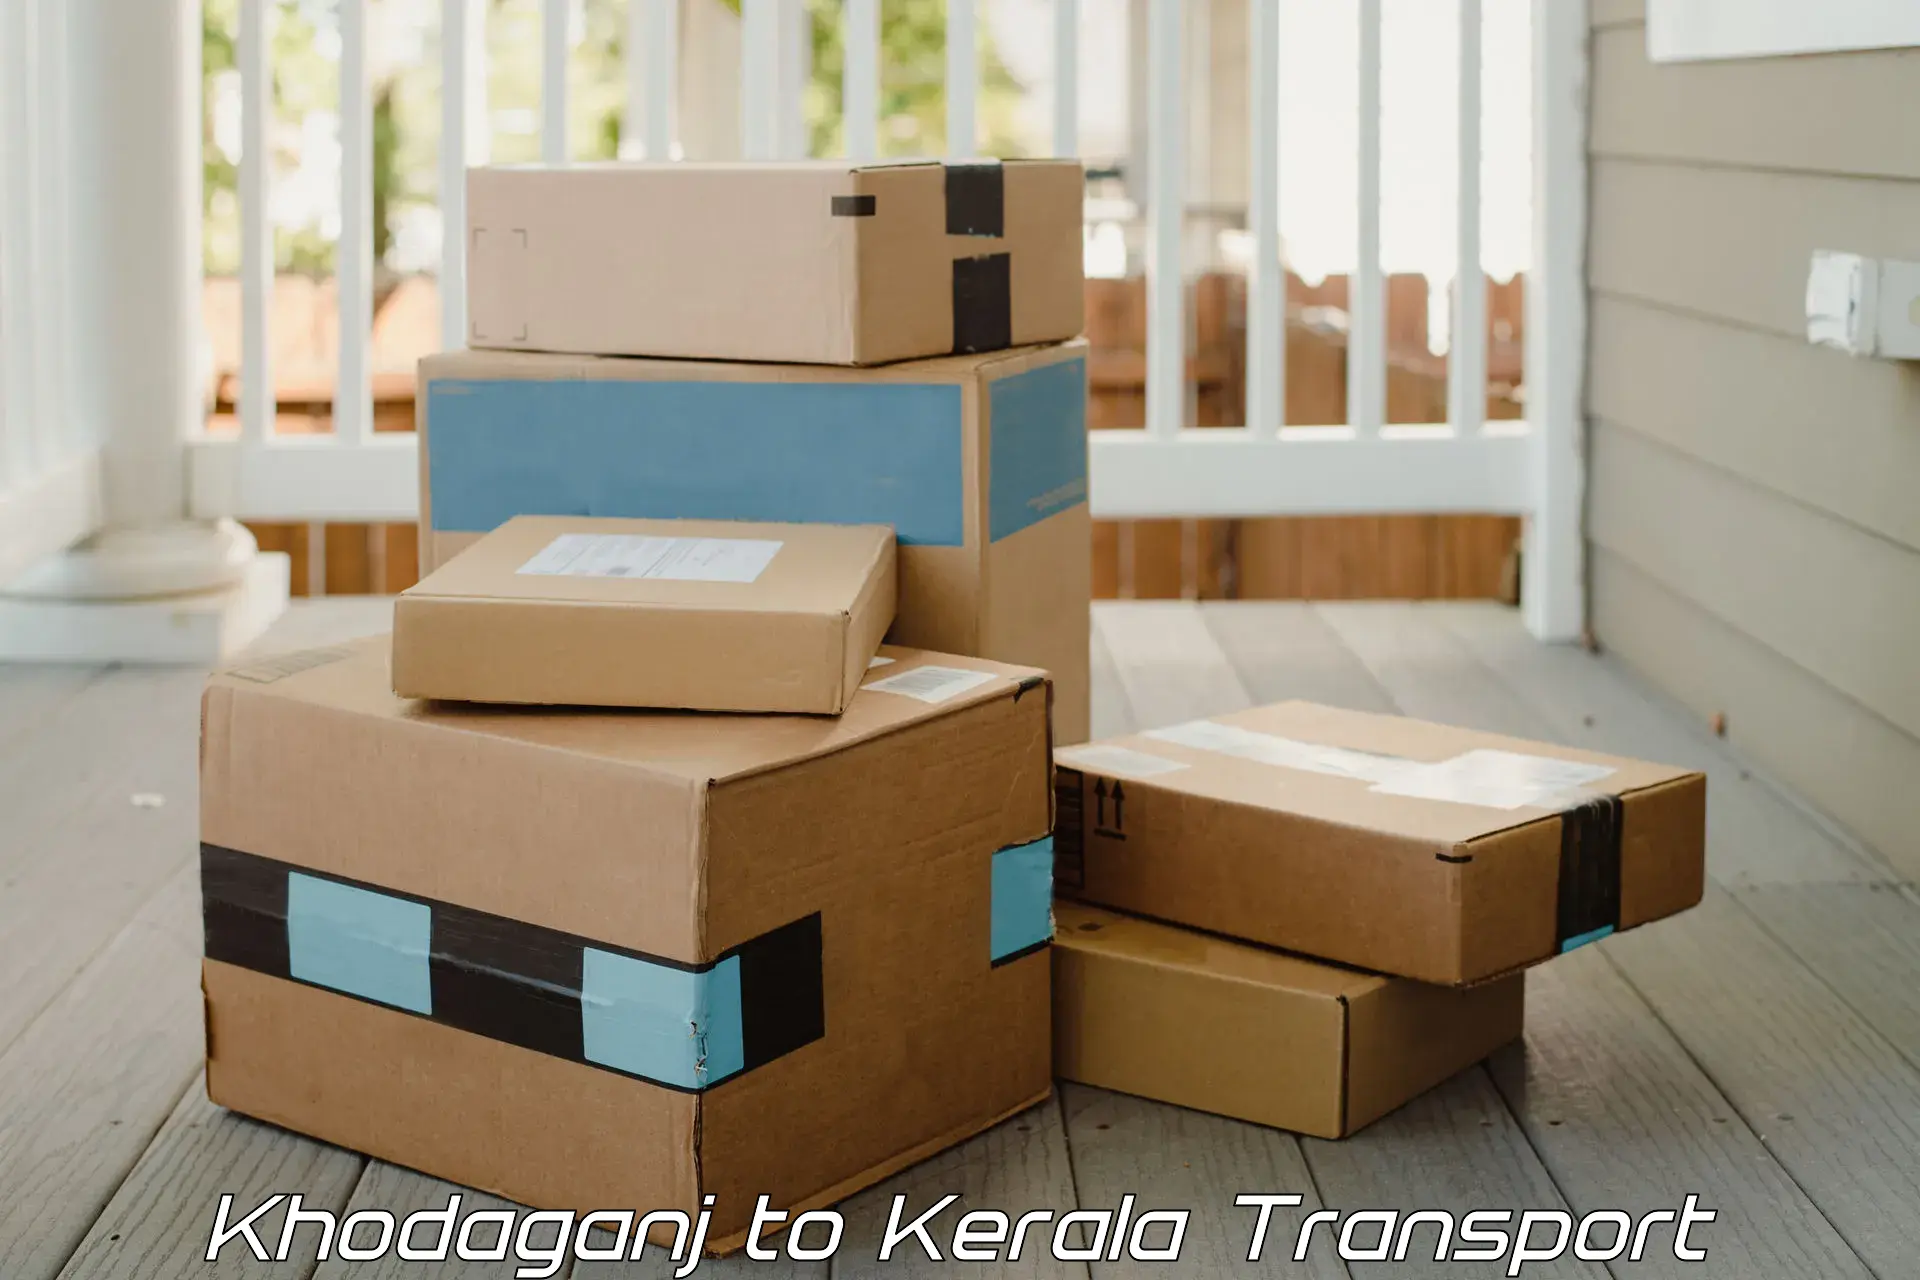 Cargo transportation services Khodaganj to Calicut